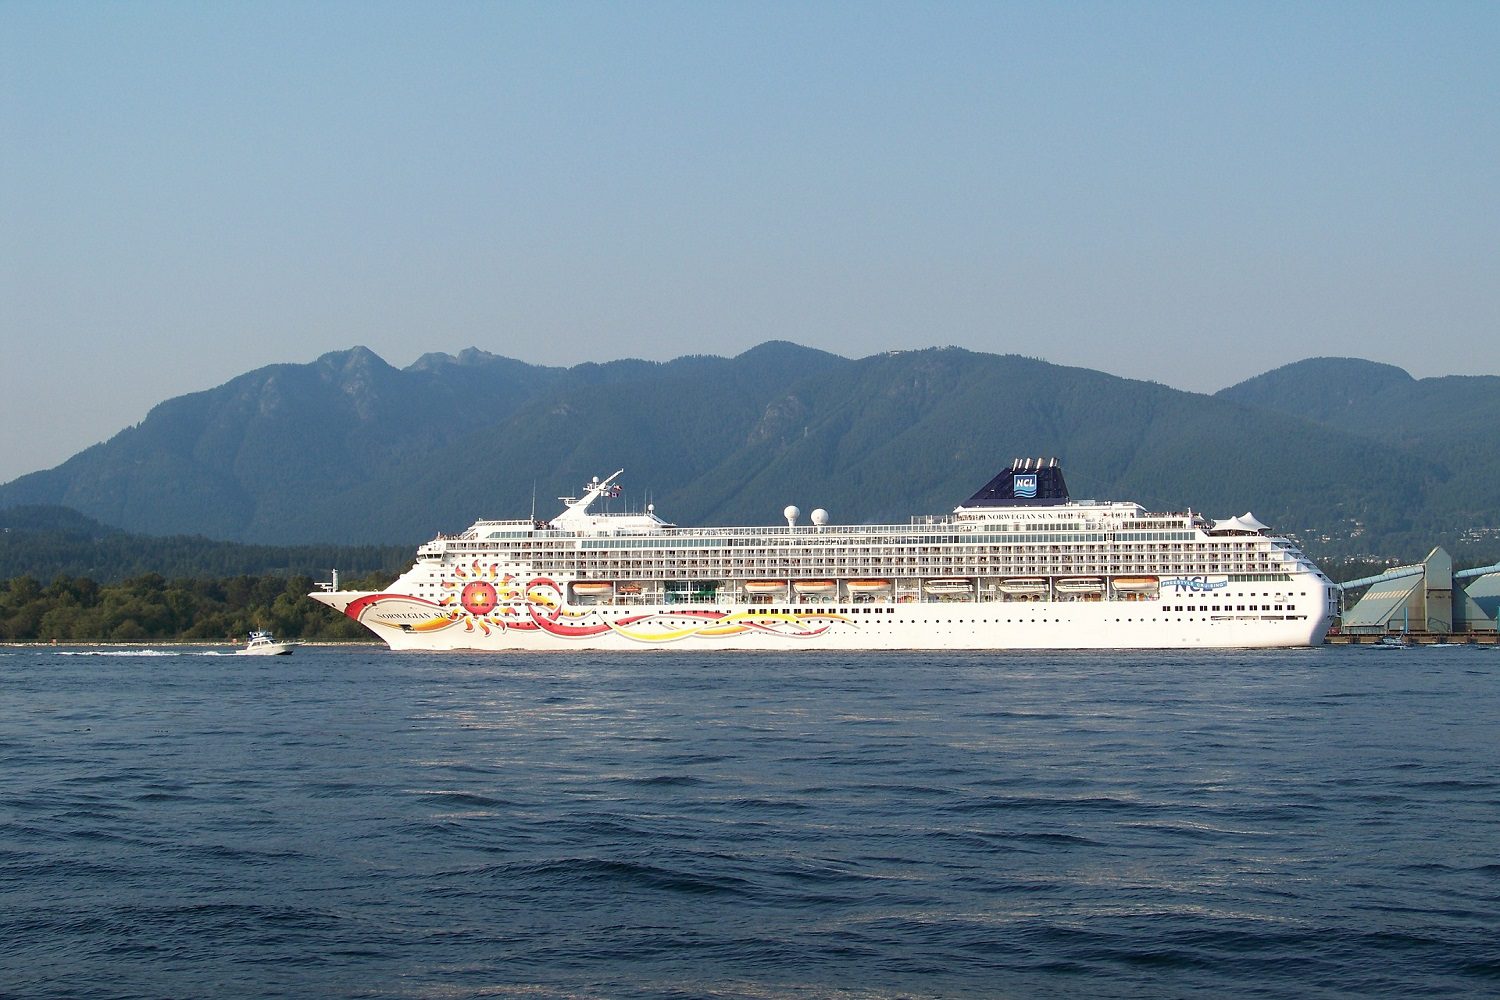 norwegian cruise line